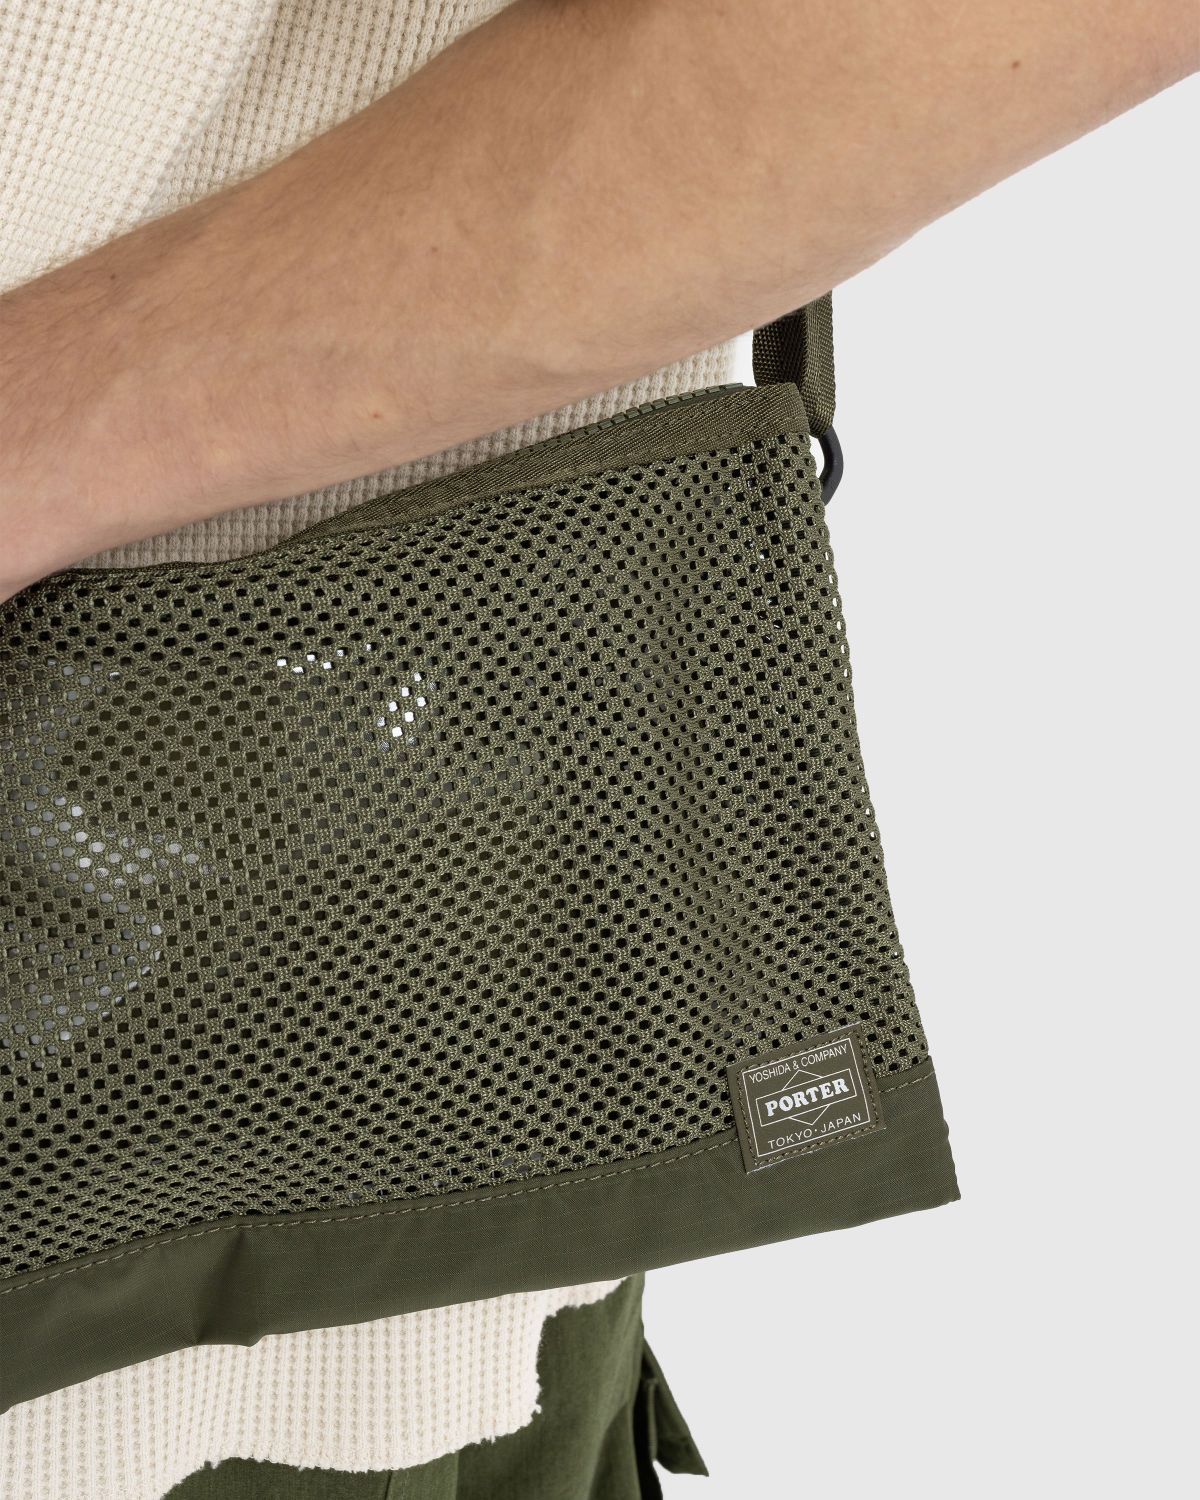 Porter-Yoshida & Co. – Sacoche Screen Shoulder Bag Green